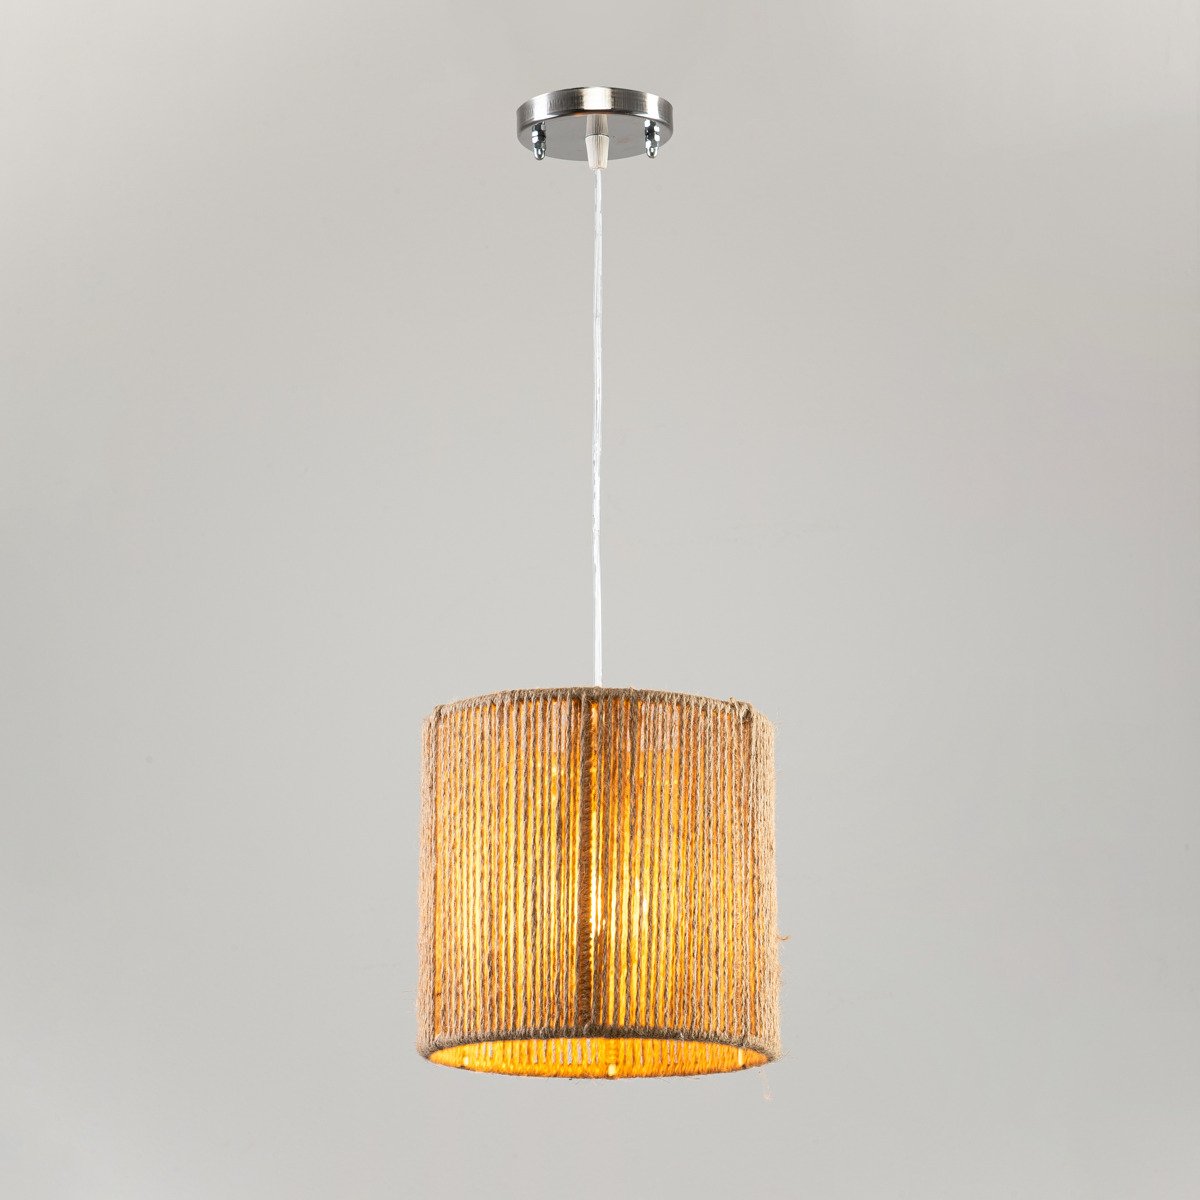 Ceiling Lamp - KH008